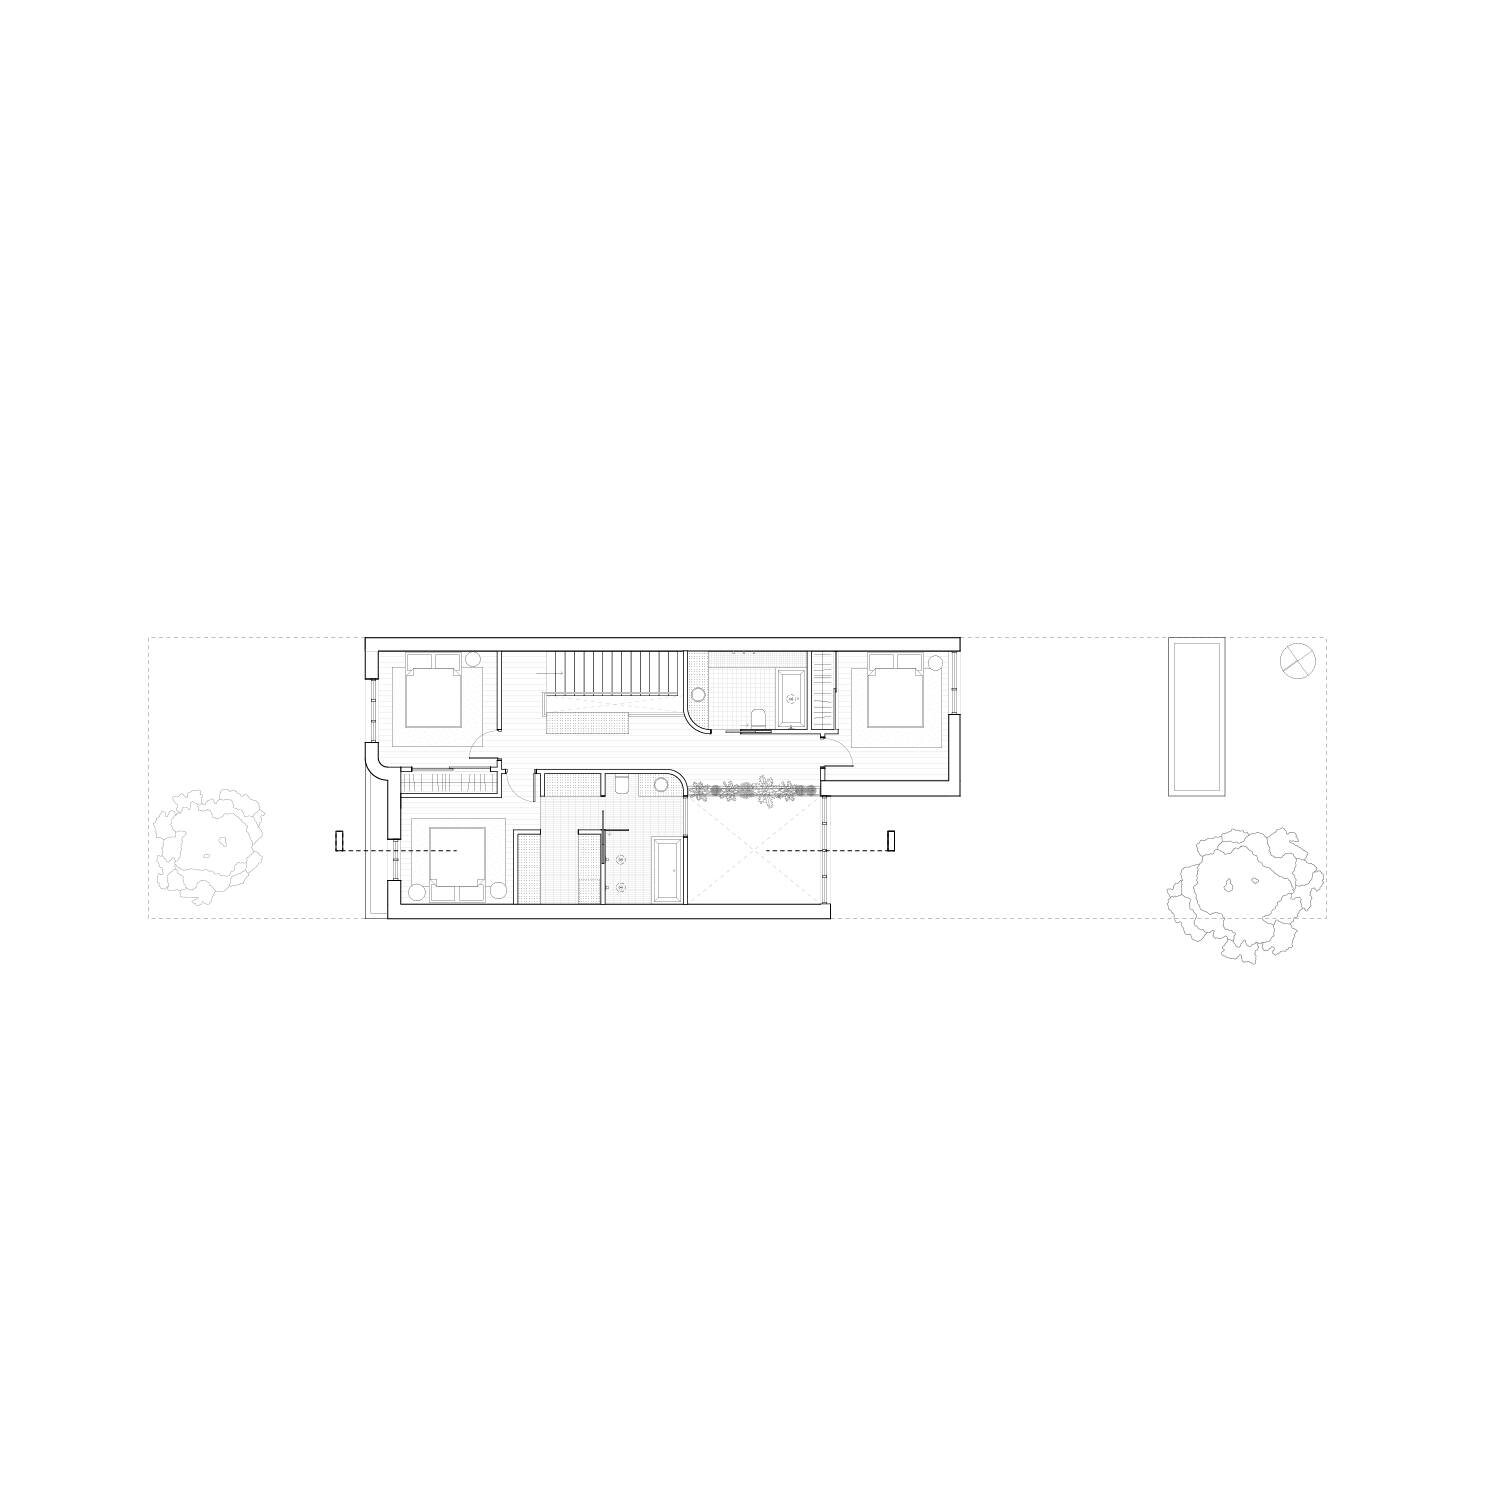 Agrandissement d'un shoebox &agrave; Montr&eacute;al - plan 2e &eacute;tage.
-
Conception en cours.

#architecture #shoebox #renovation #design #architecturemontreal